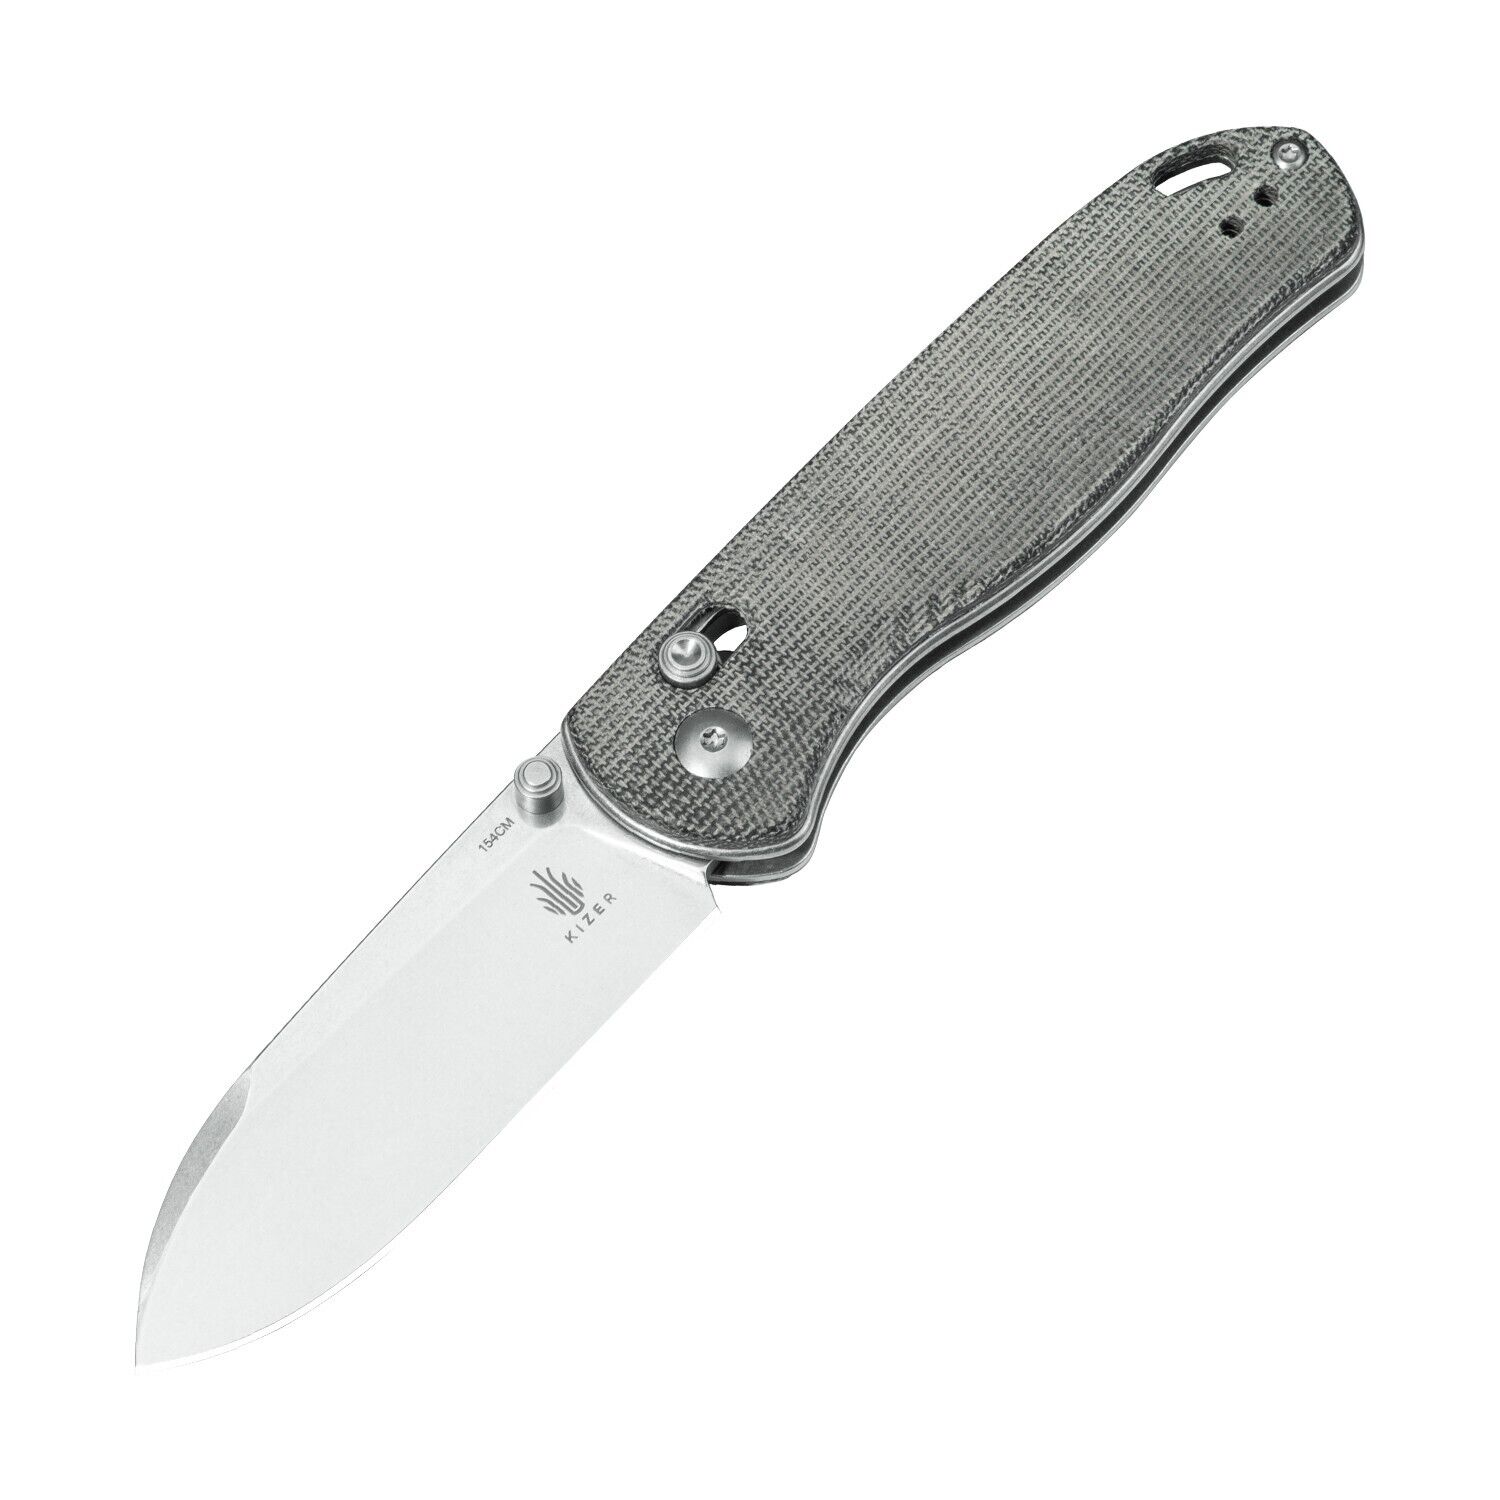 Kizer Drop Bear EDC Knife Black Micarta Handle 154CM Steel Pocket Knife V3619C3